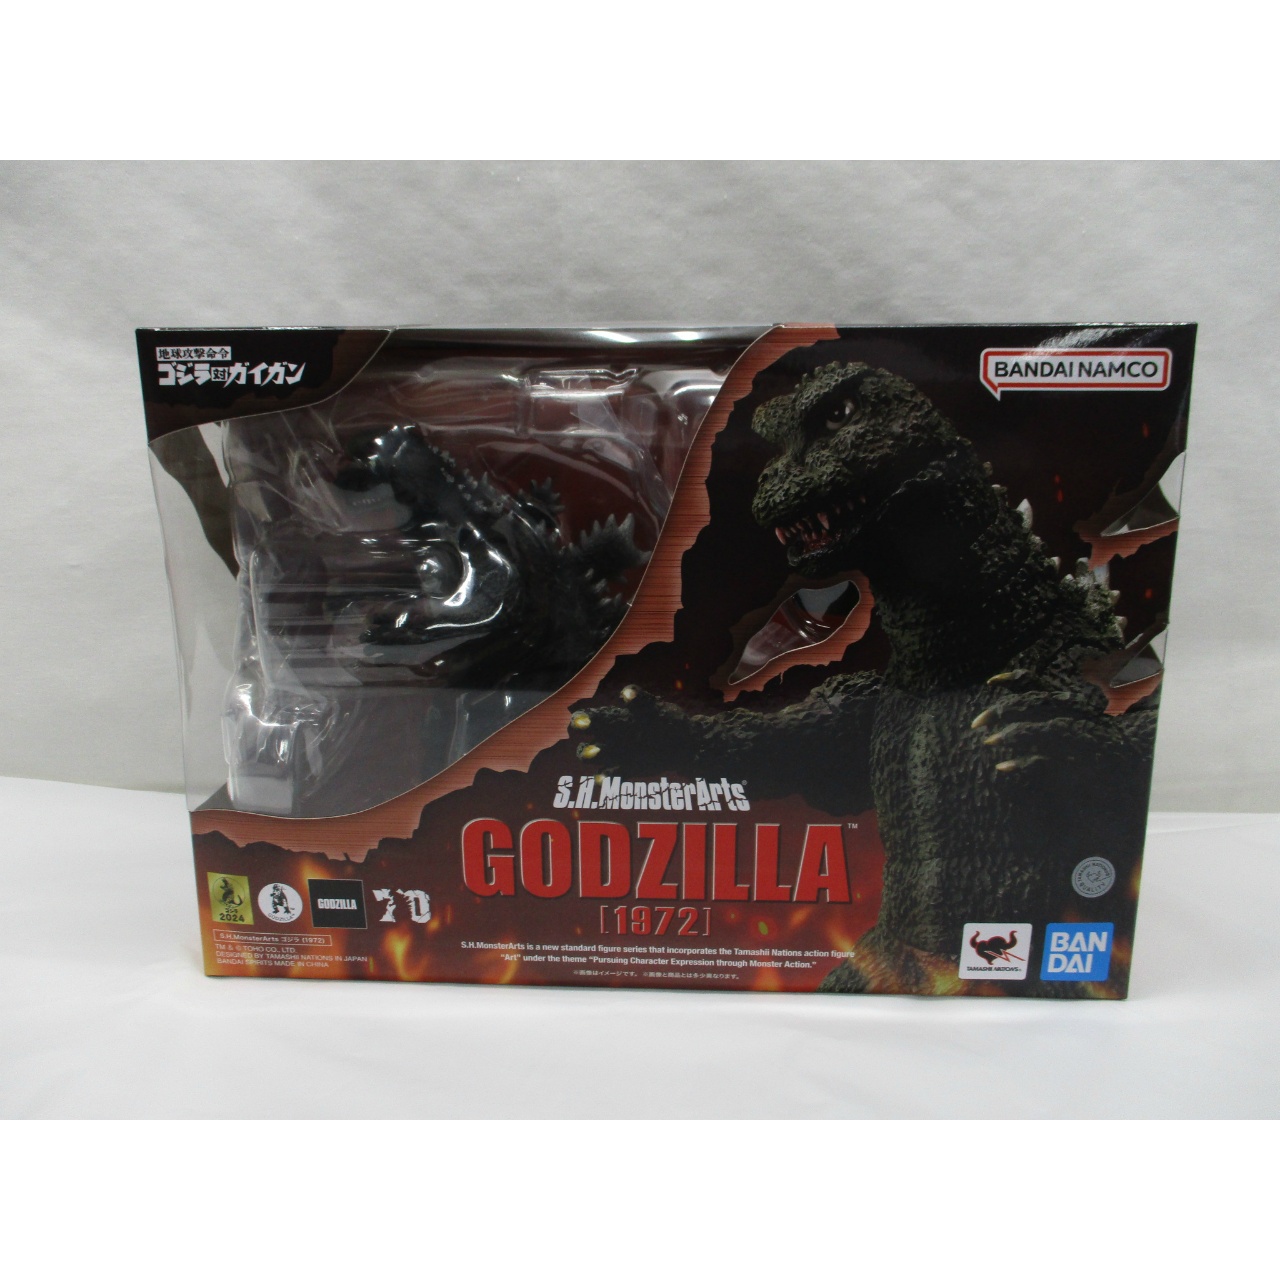 JUNGLE Special Collectors Shop / Godzilla